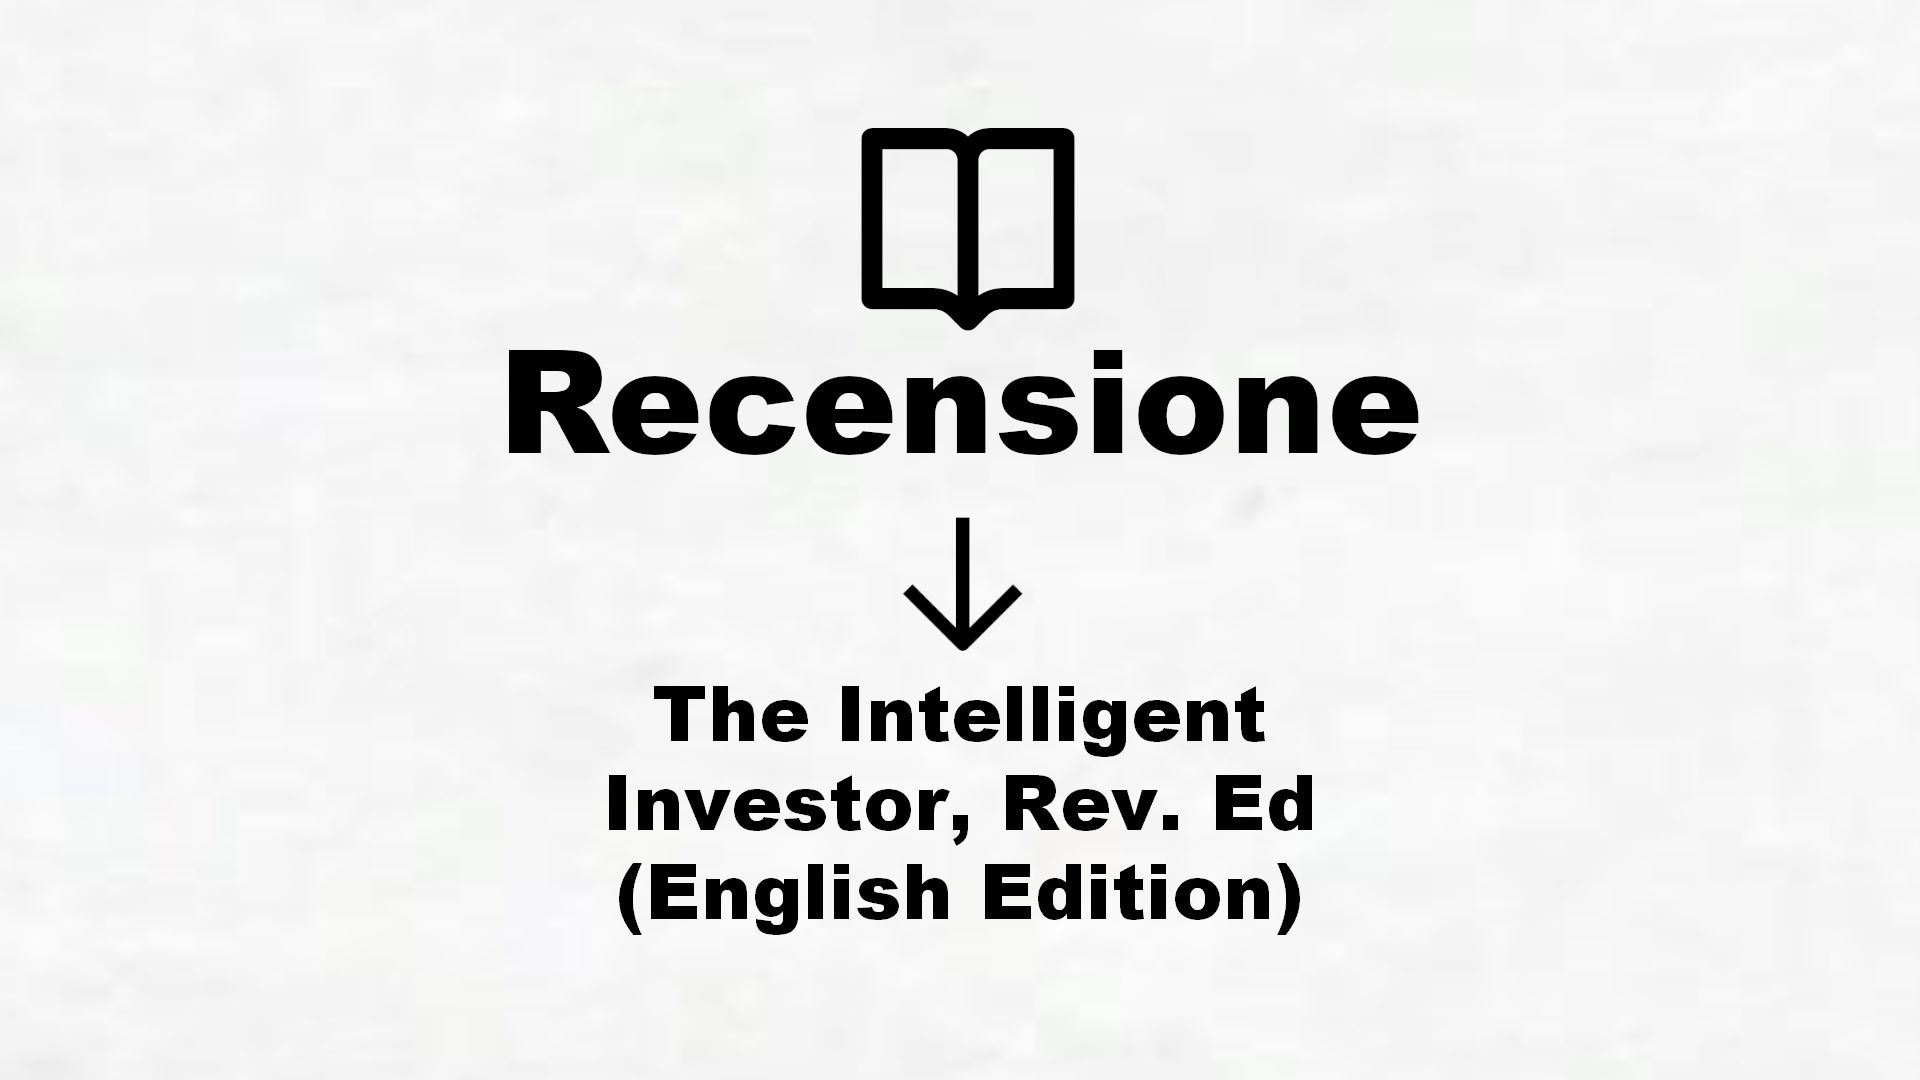 The Intelligent Investor, Rev. Ed (English Edition) – Recensione Libro